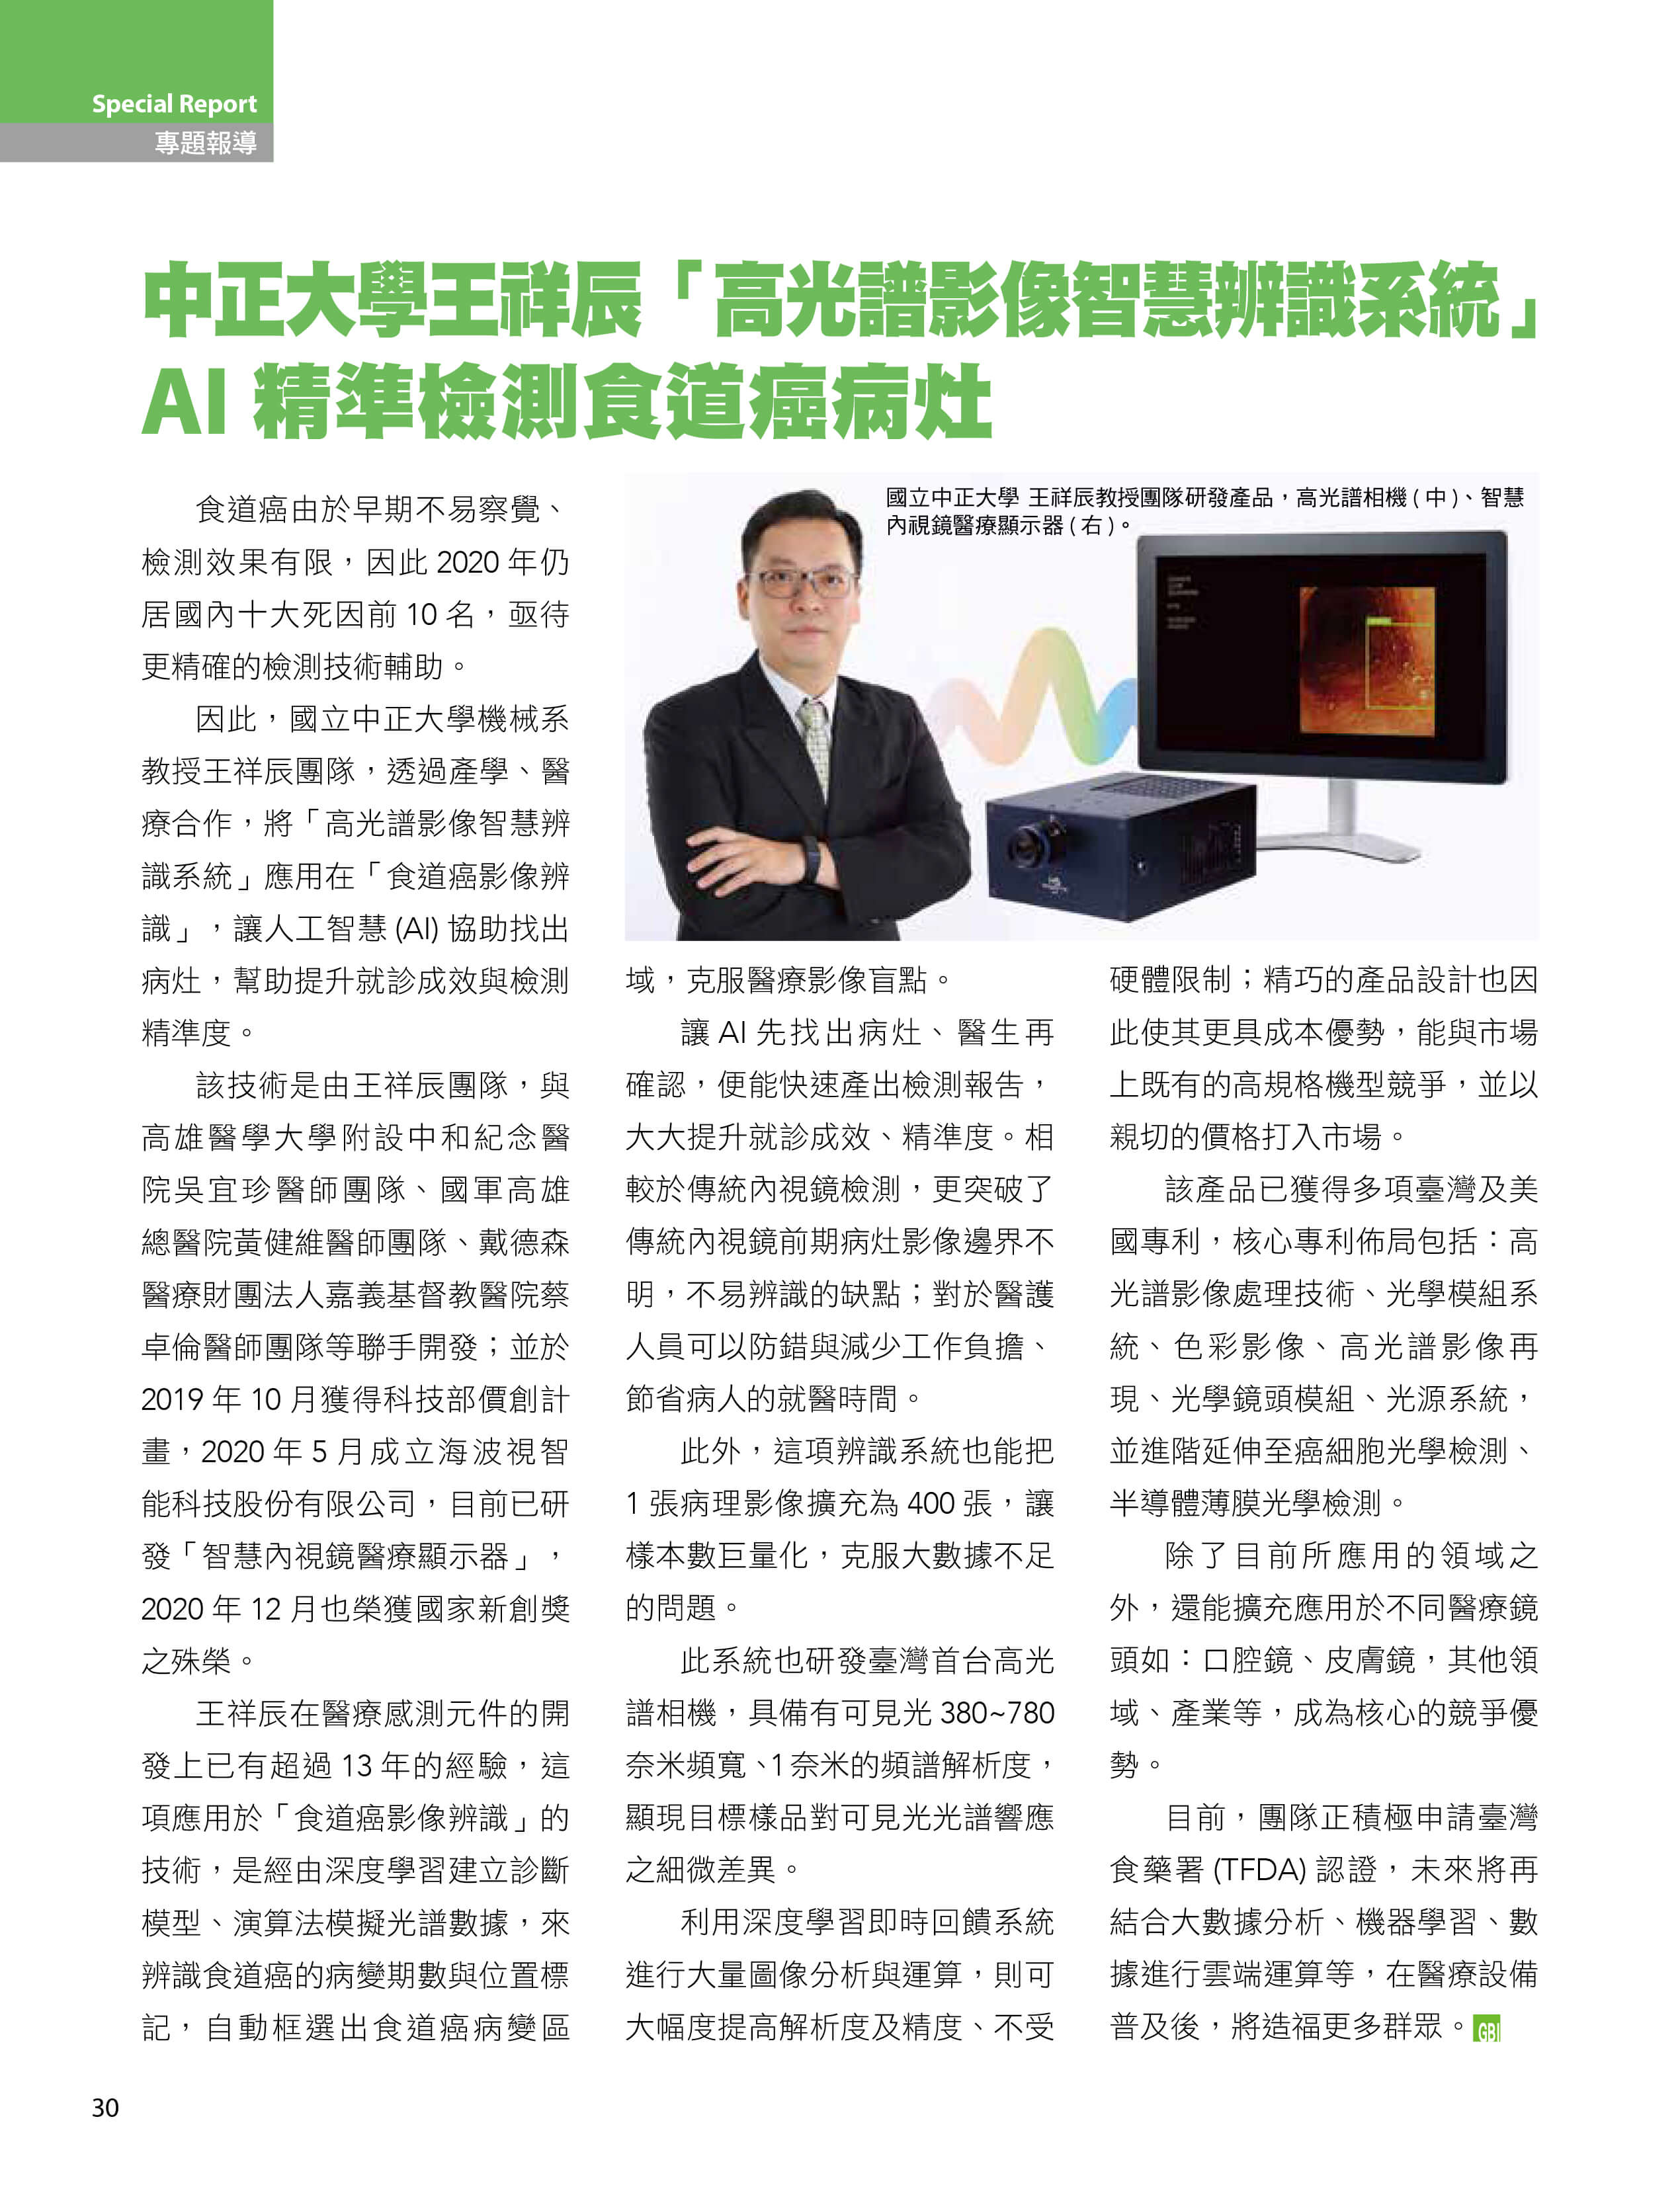 中正大學王祥辰教授-高光譜影像智能辨識系統-AI精準檢測食道癌病灶